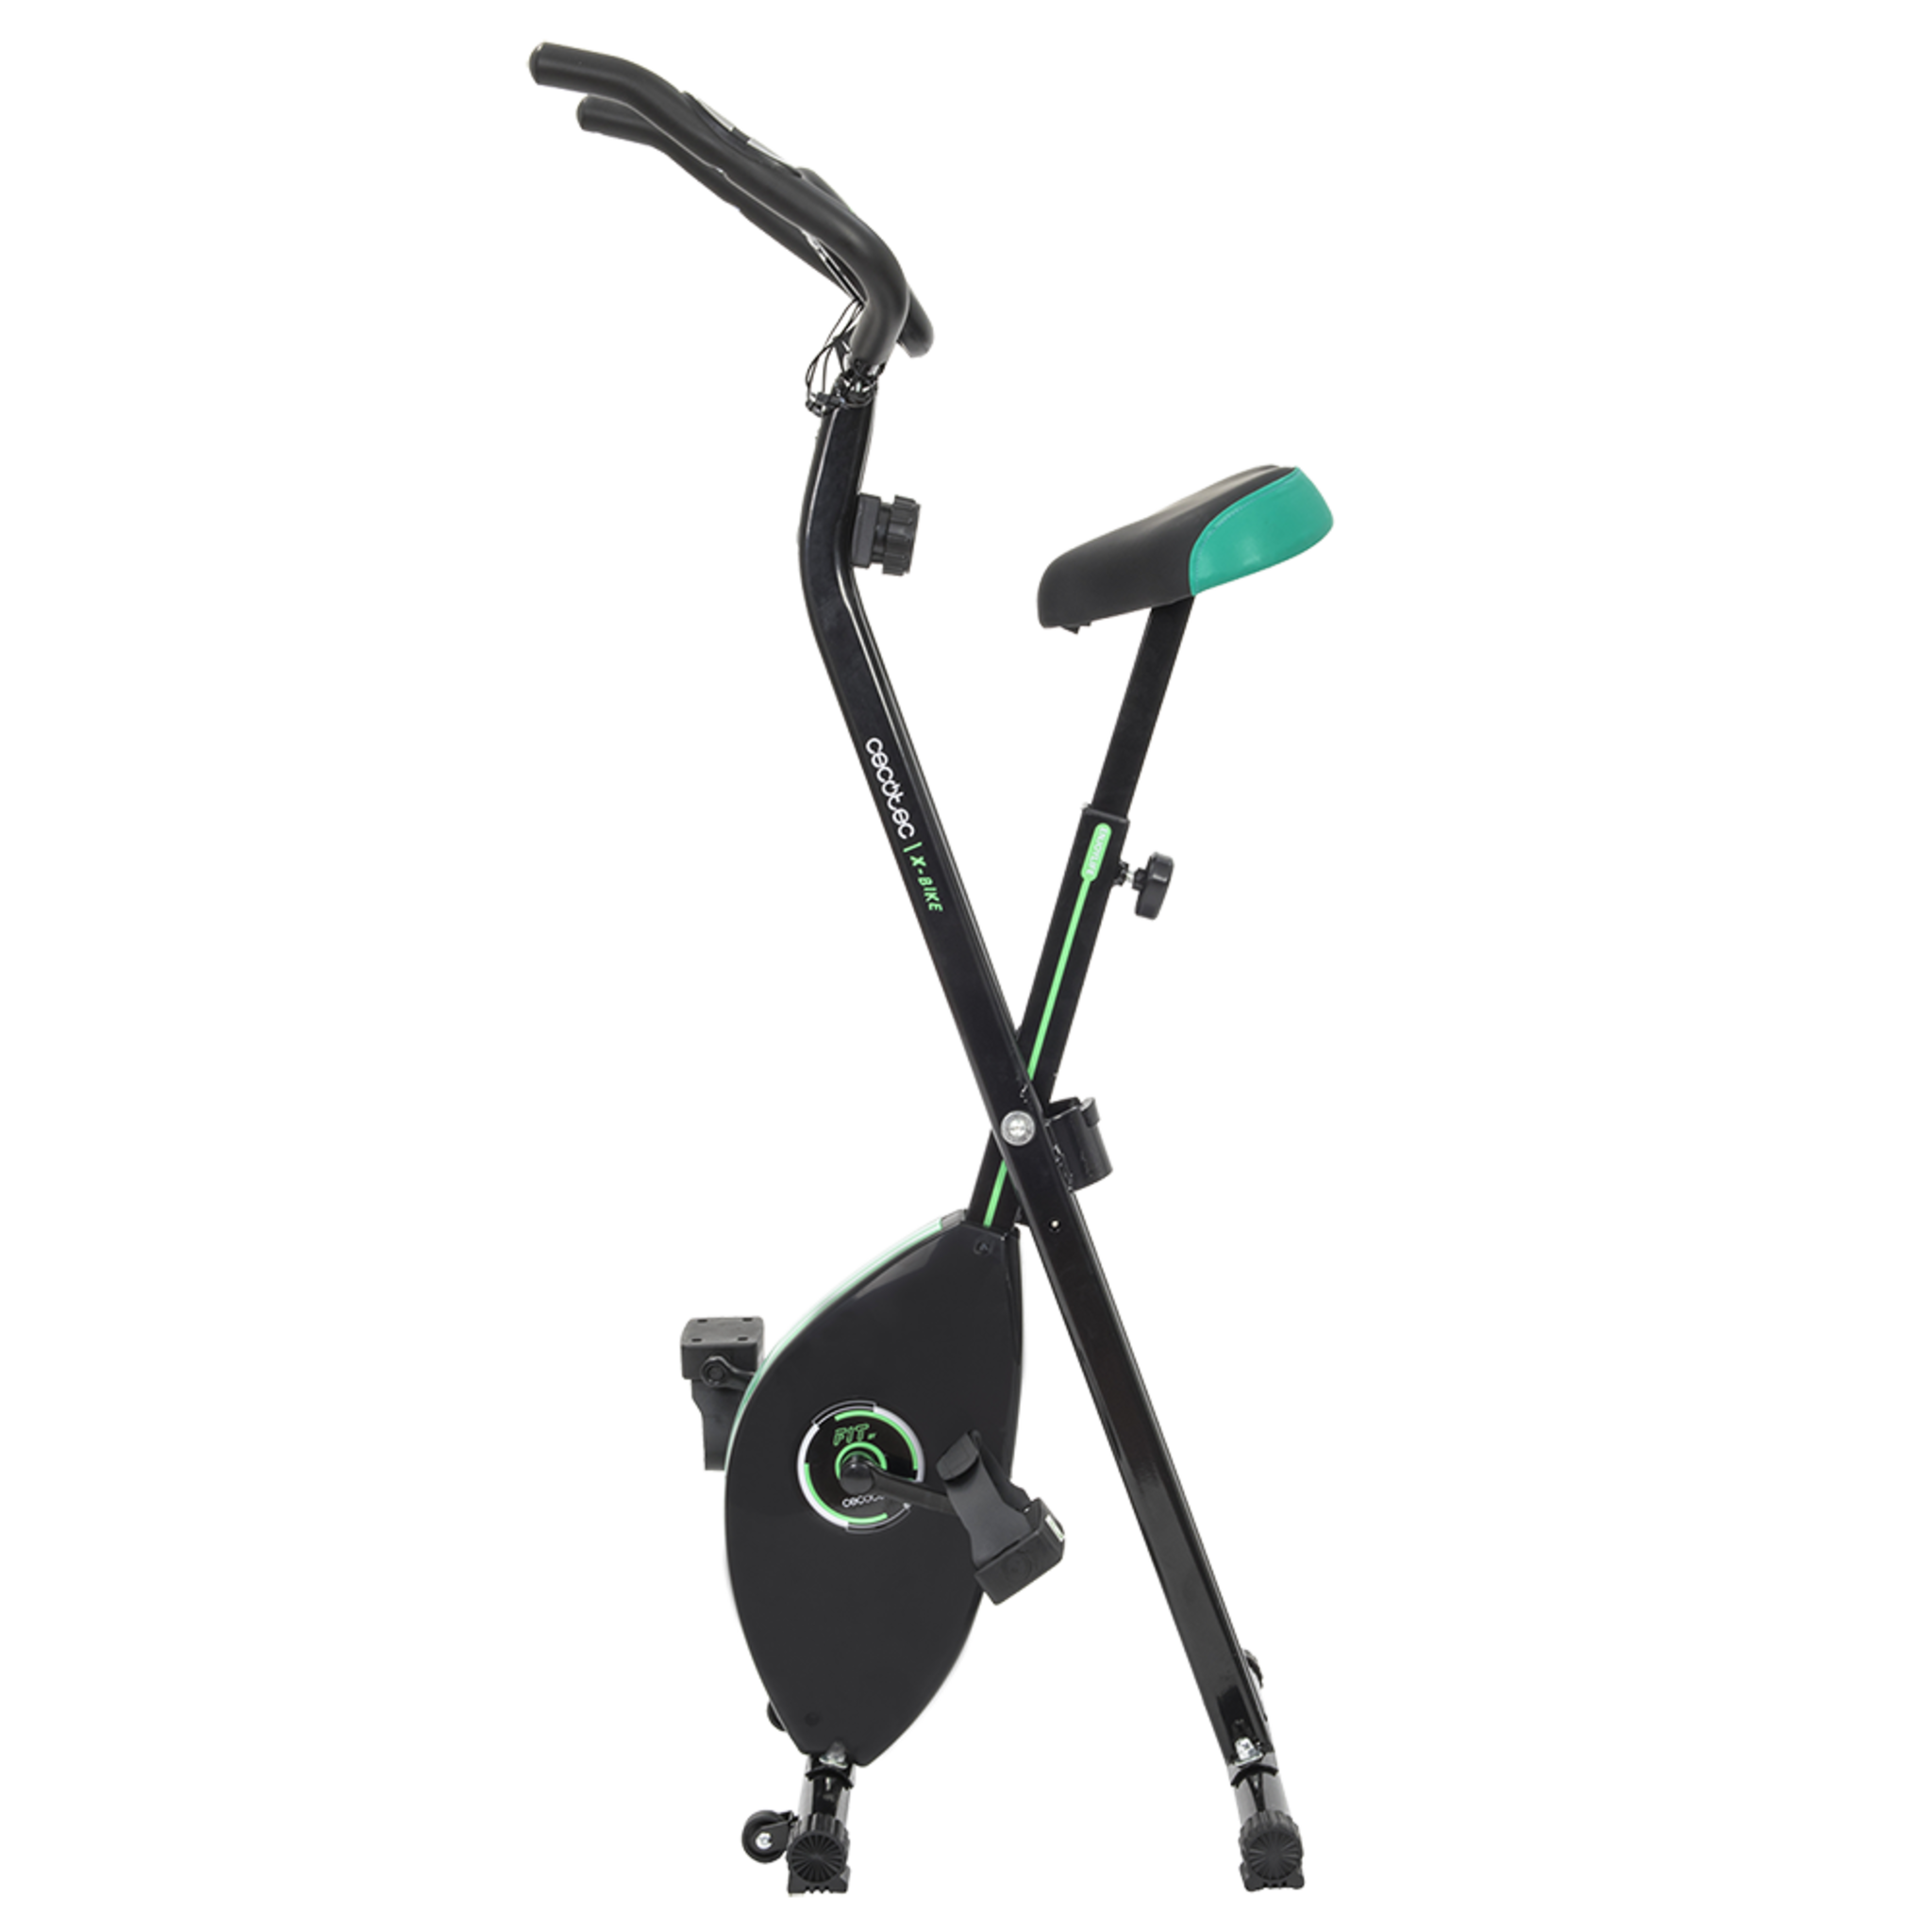 Bicicleta Estática Plegable con Volante de Inercia de 2,5 Kg X-Bike. Sistema Silence Fit, Ergonómica, Manillar y Sillín Regulable, Pulsómetro, Pantalla LCD, Ruedas, Peso máximo 100 Kg